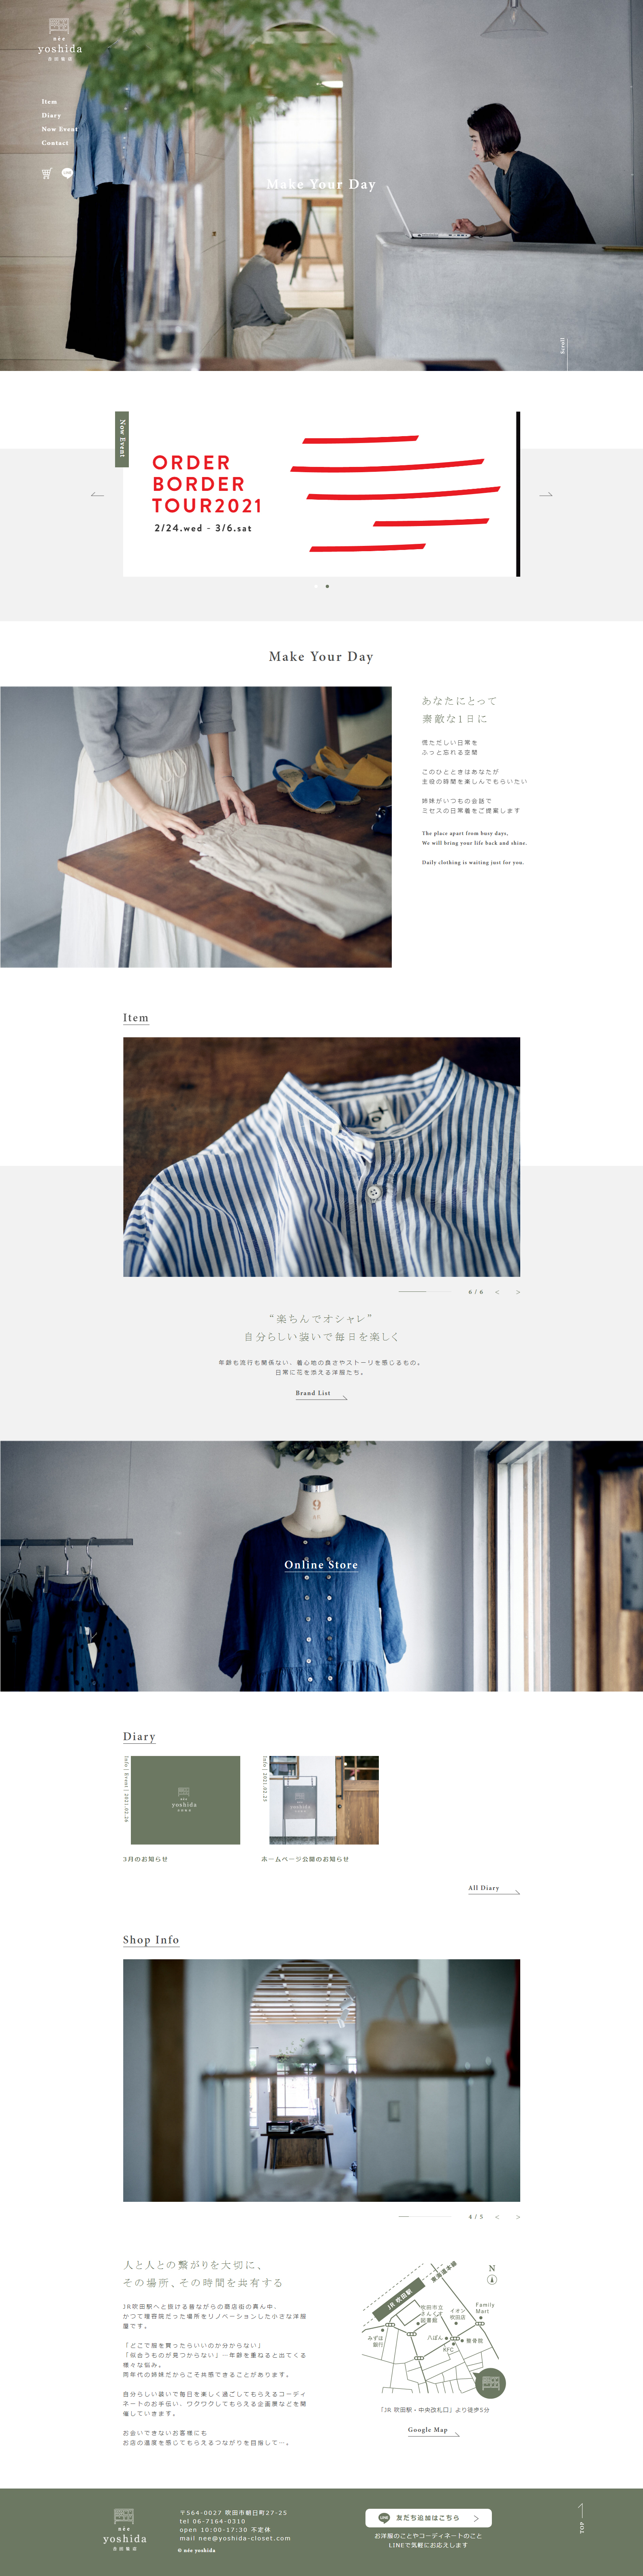 吉田时装店网站设计